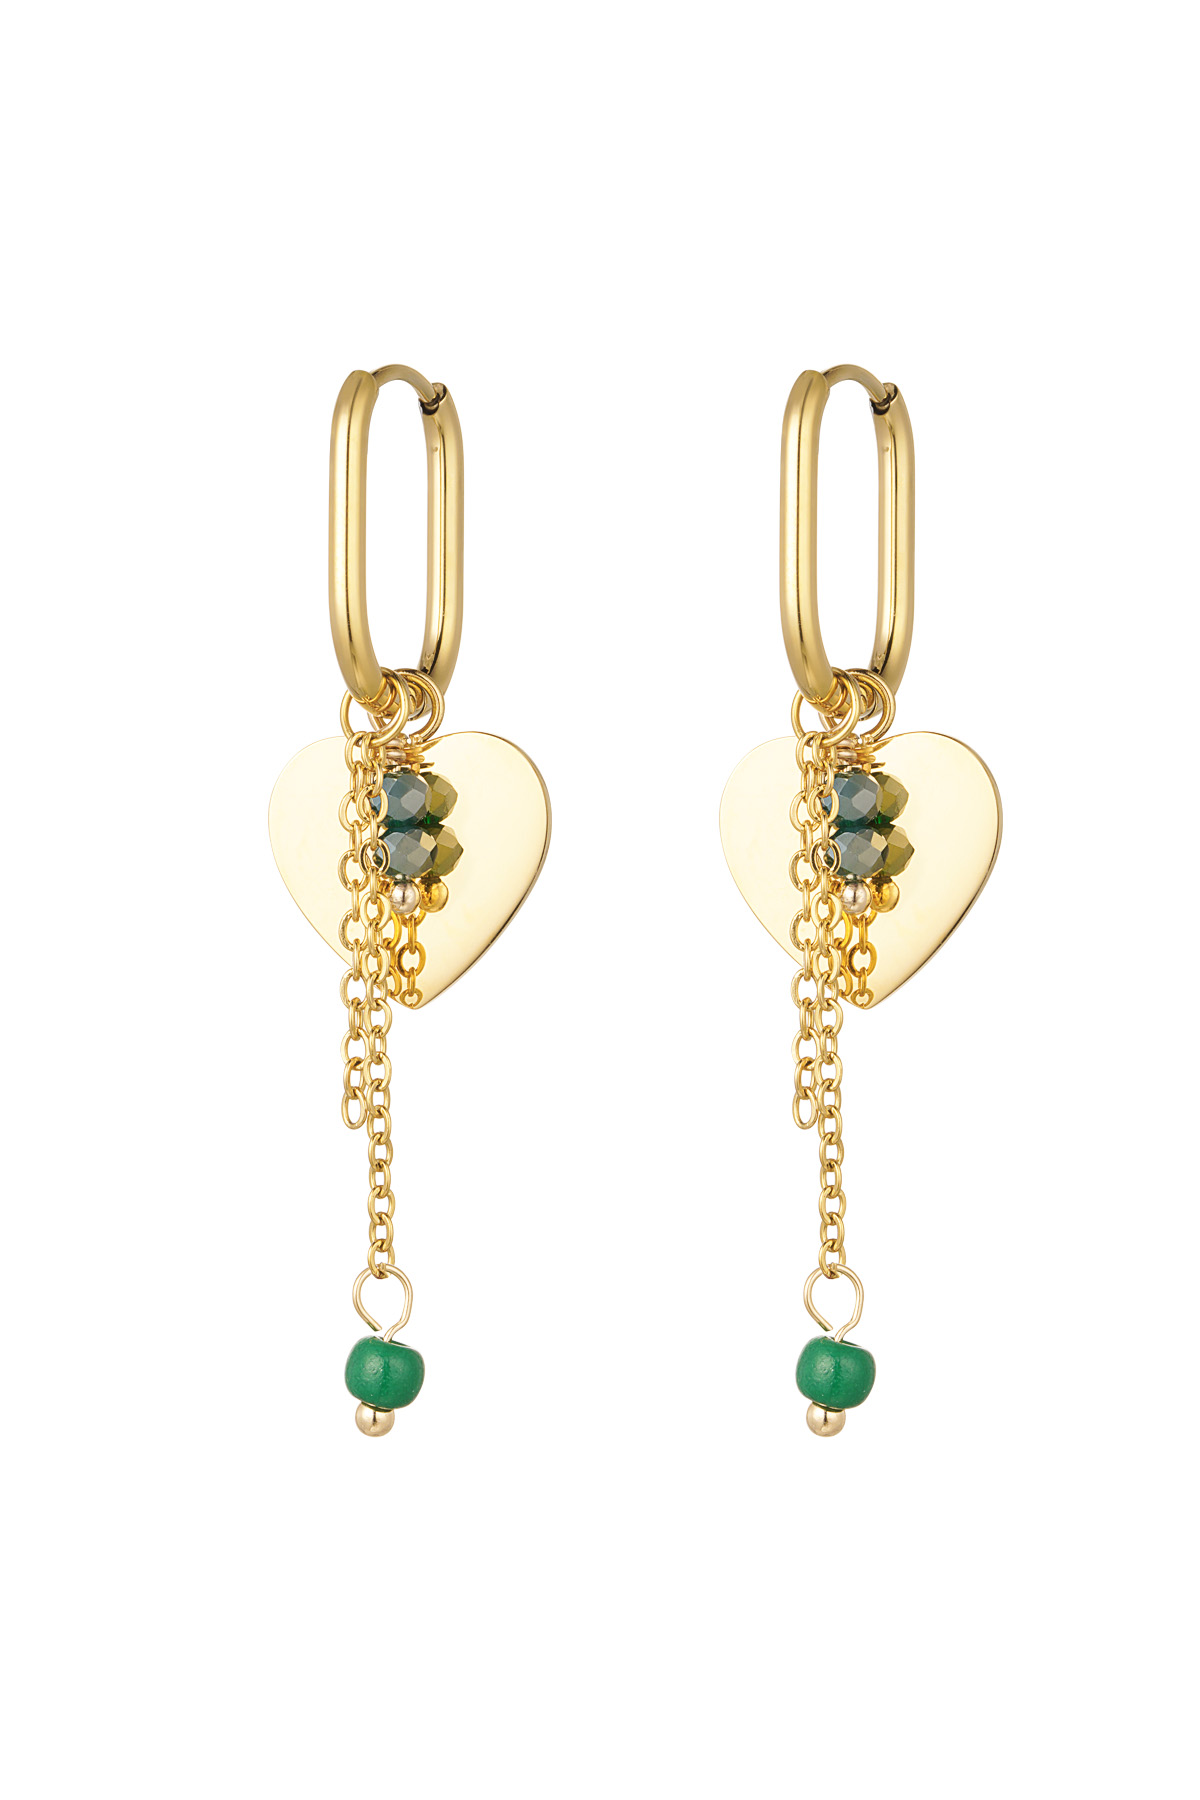 Herzohrringe mit Kette und Perlen – gold/grün